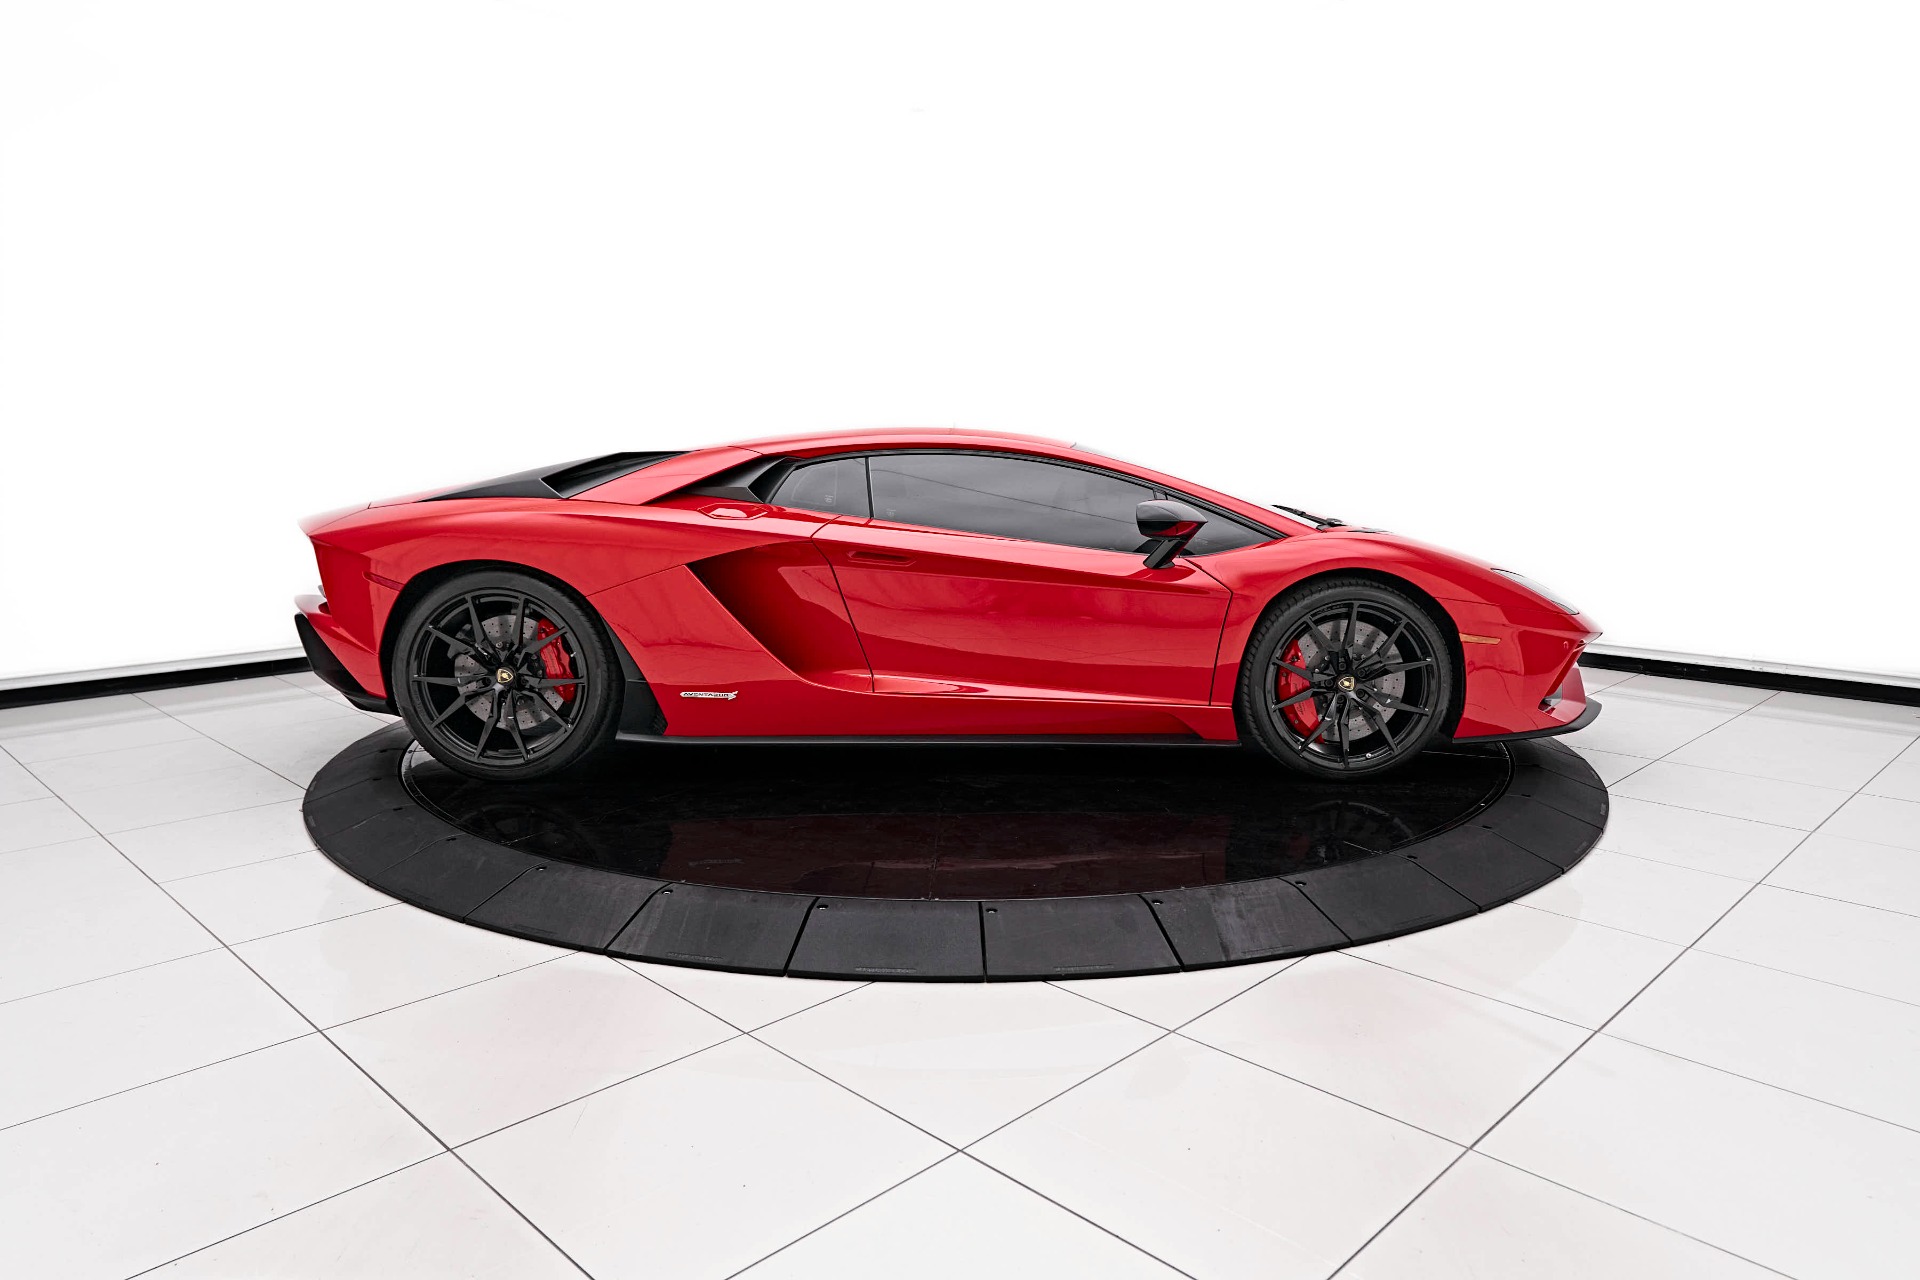 Used 2018 Lamborghini Aventador S Base For Sale (Sold) | Lotus 